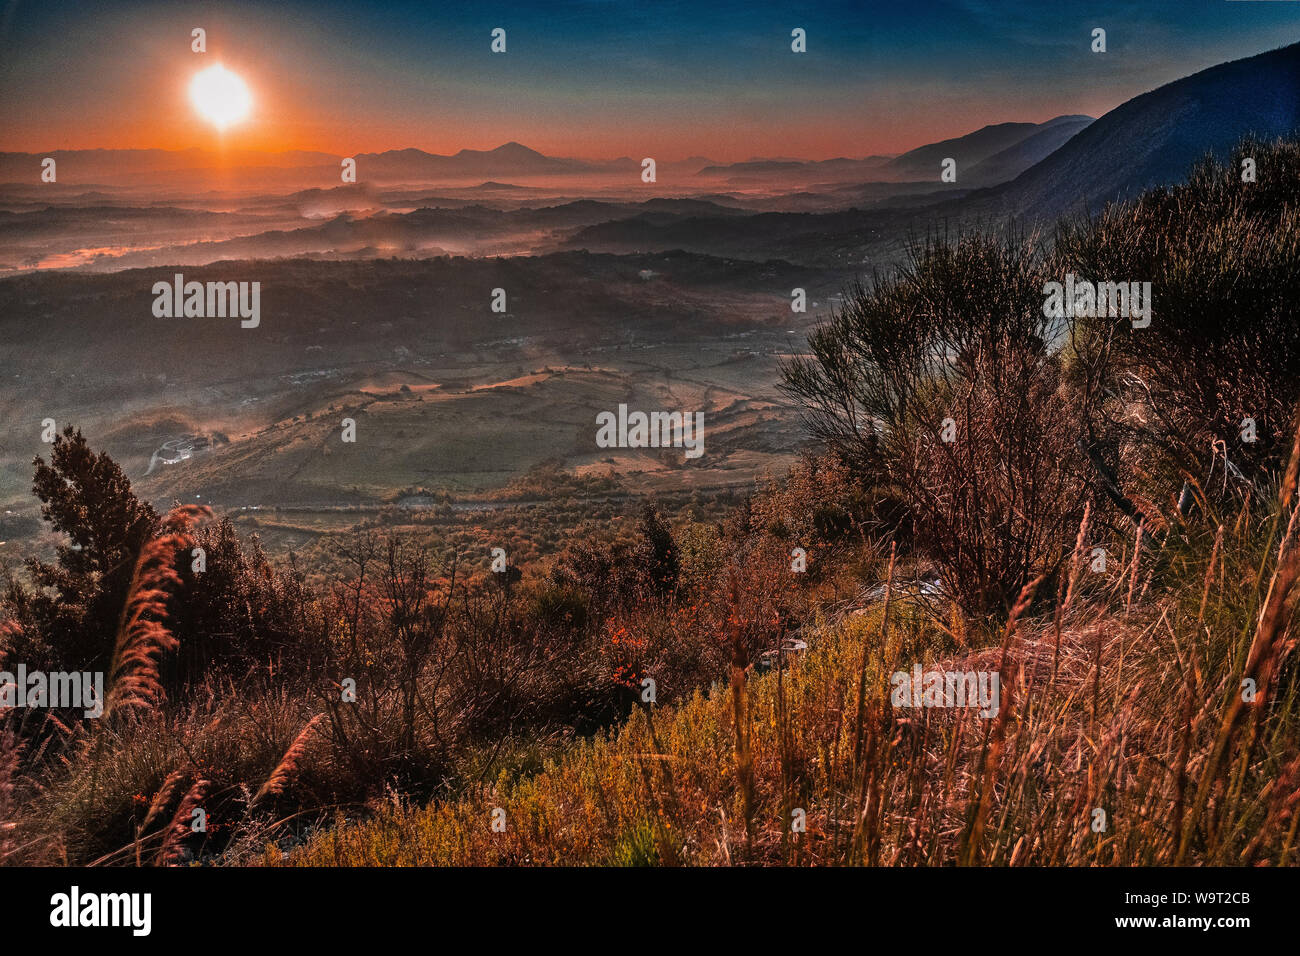 Das Land der aufgehenden Sonne 2 - ein Bild zu Ehren von Tolkien Stockfoto